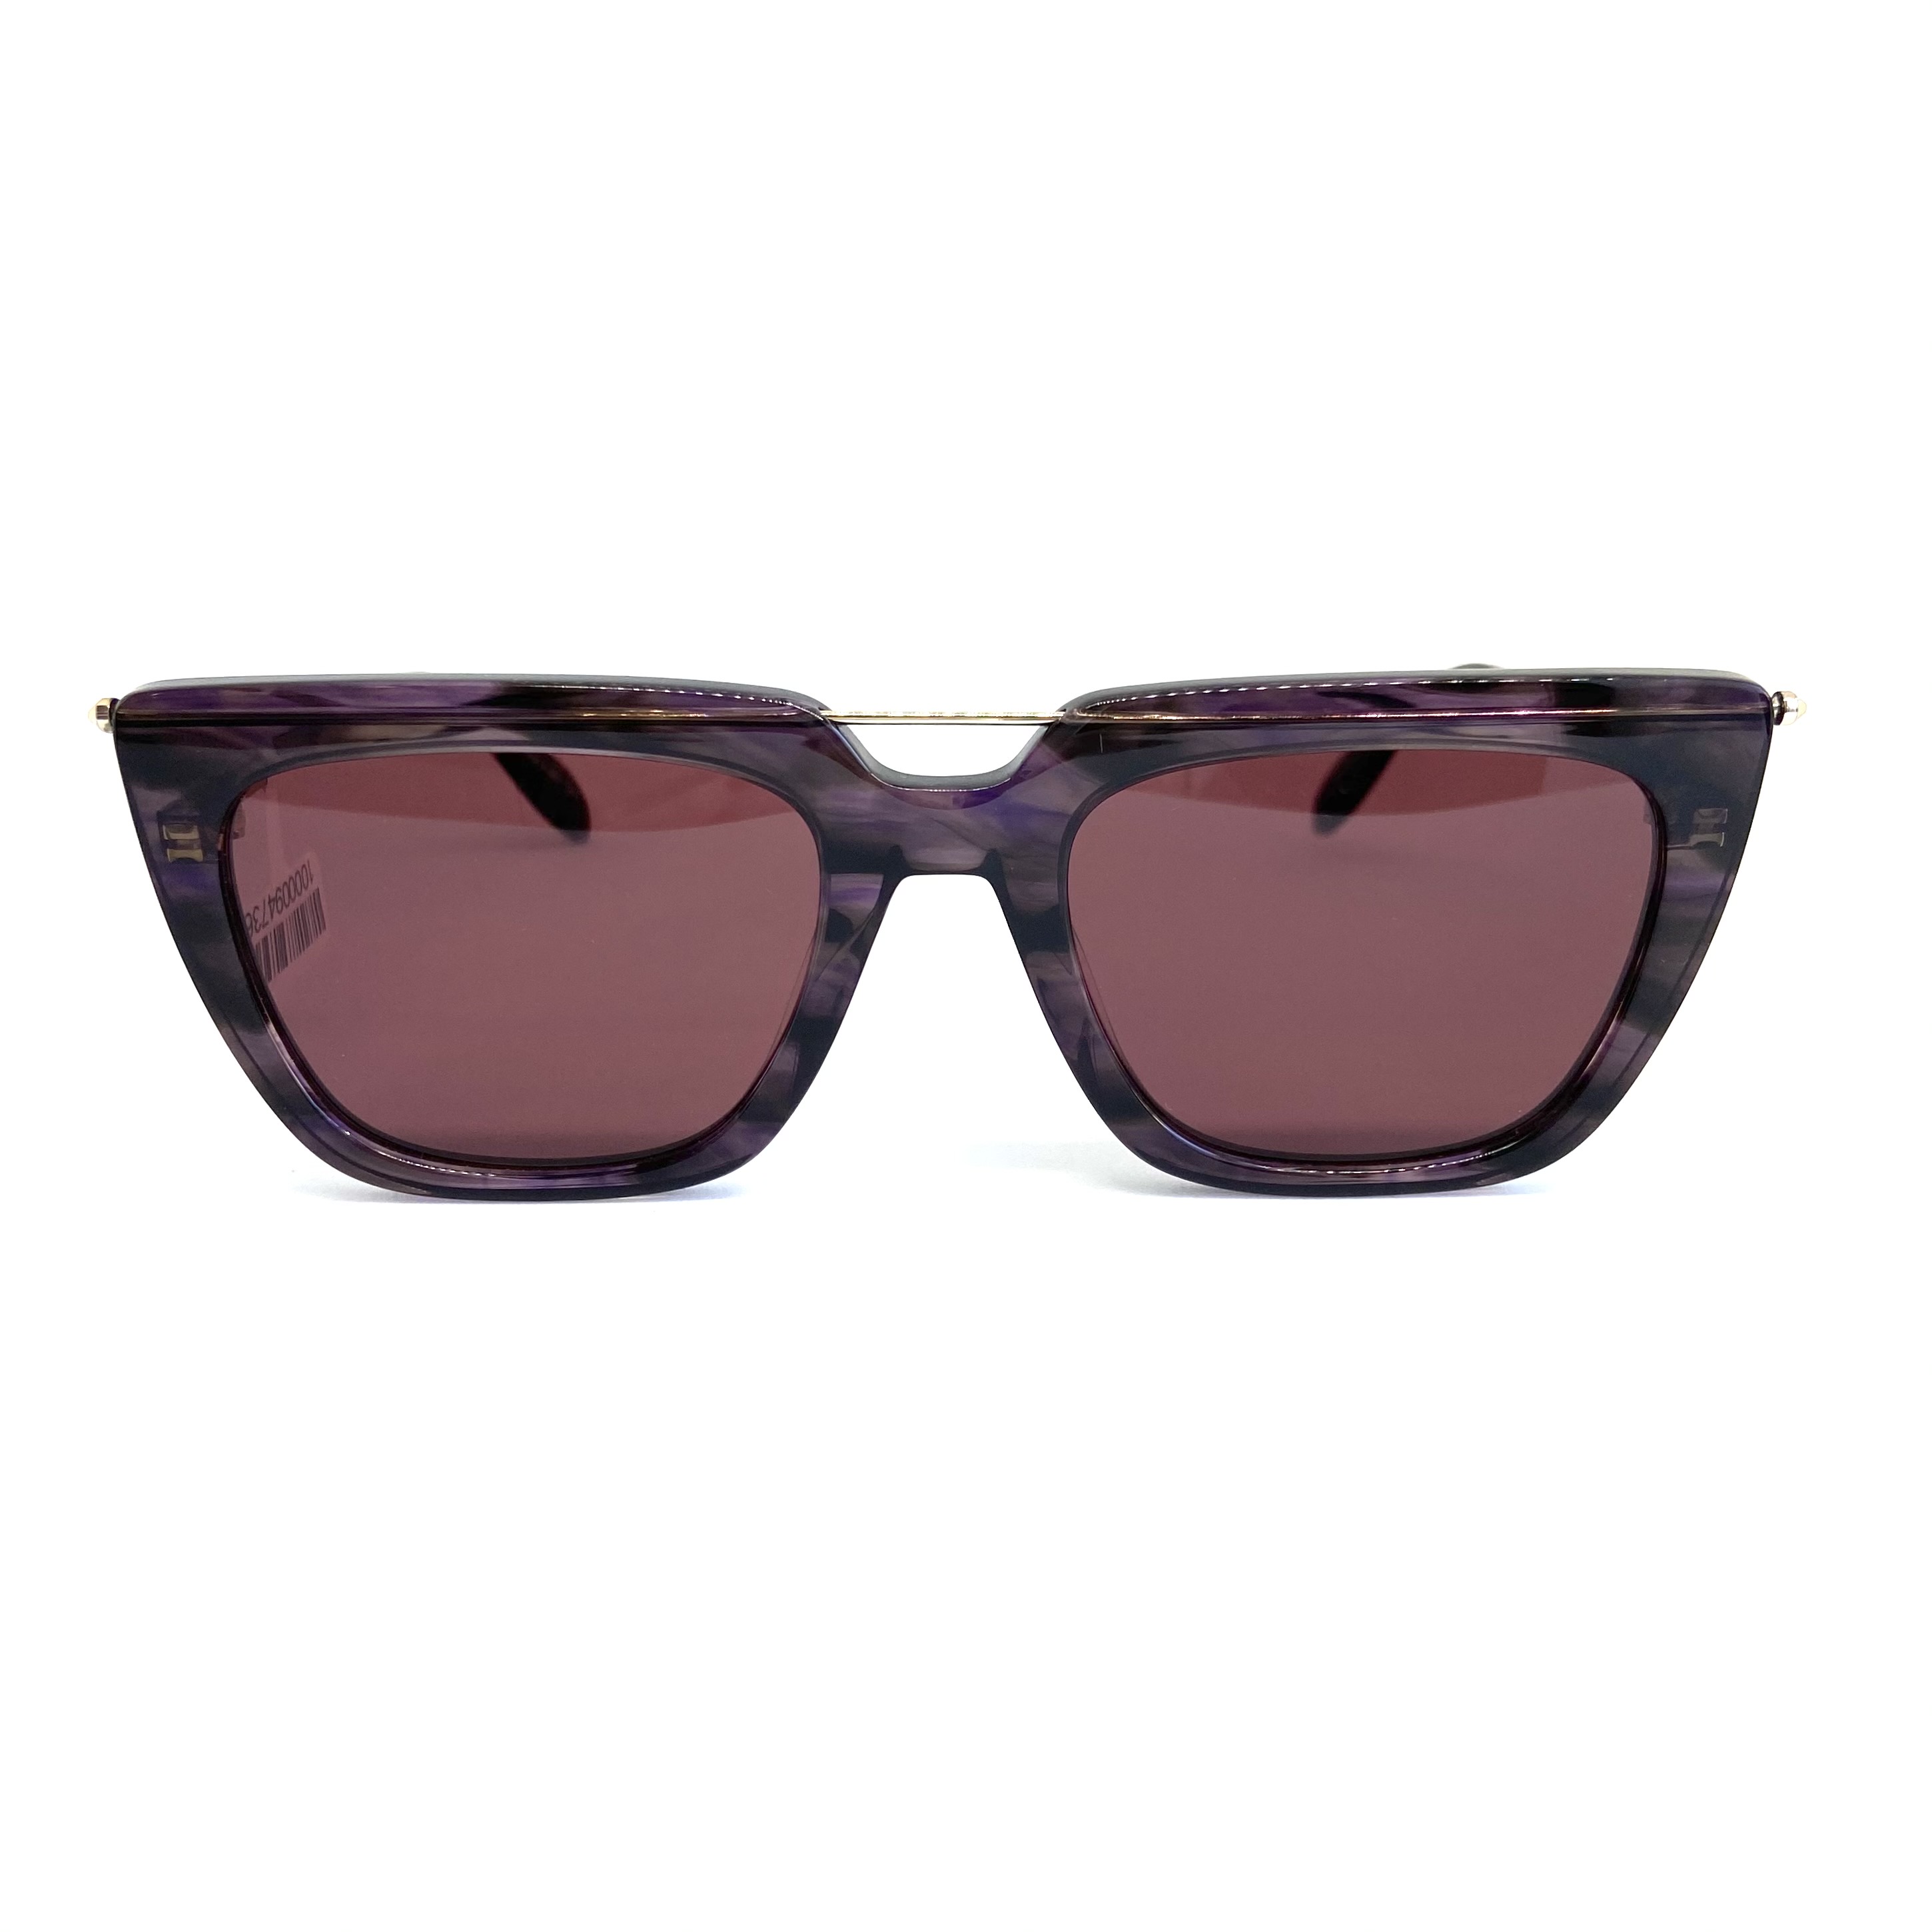 Солнцезащитные очки Alexander McQueen модель 0169